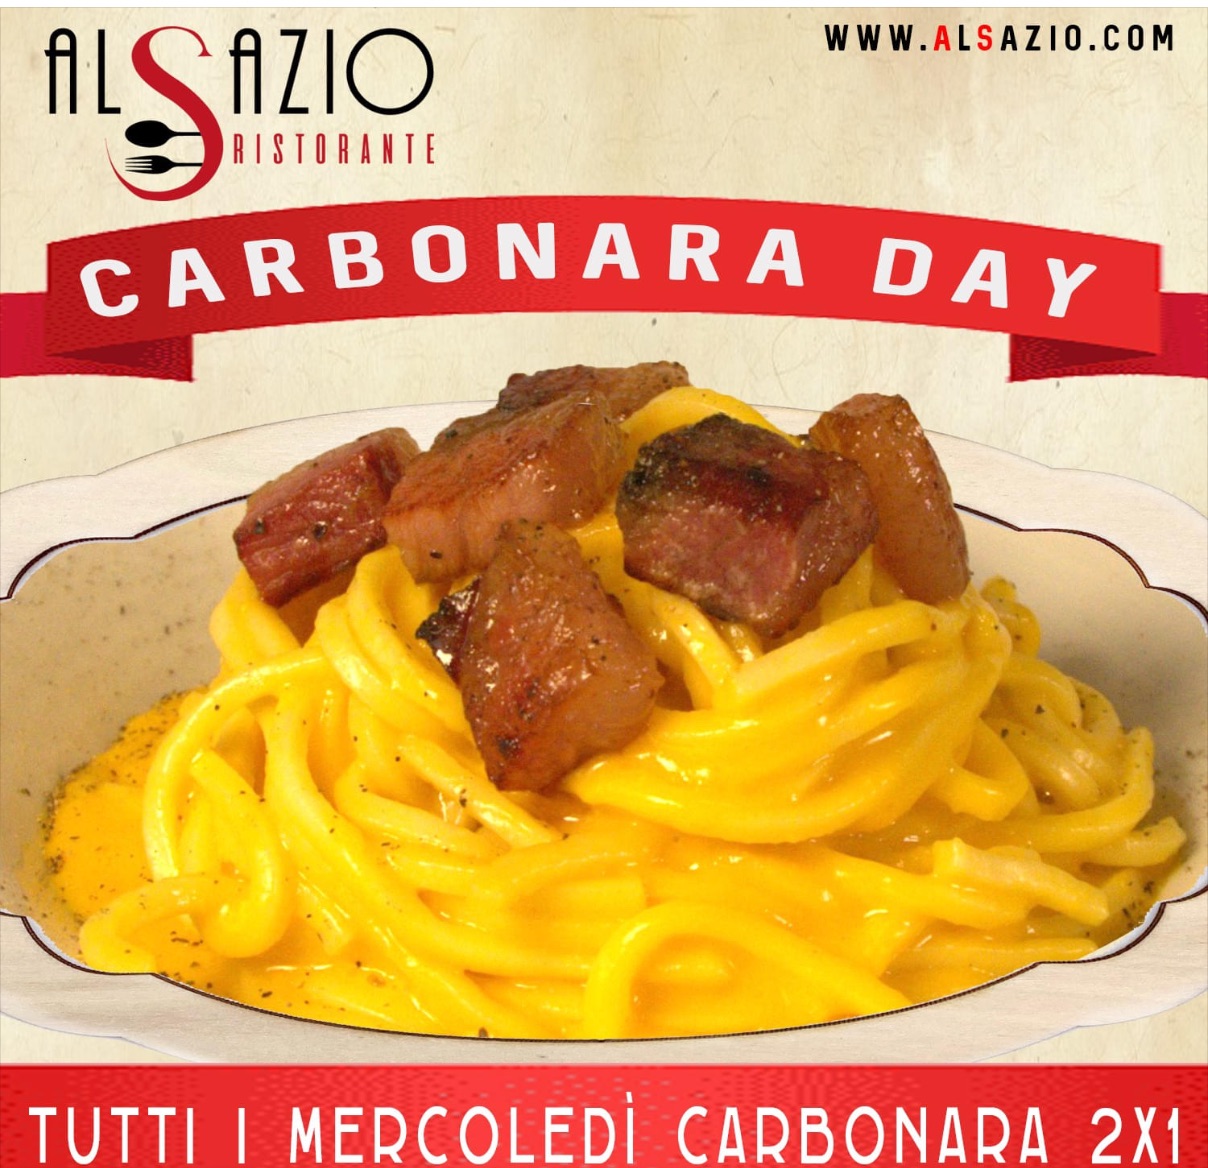 Al ristorante AL Sazio di Lodi, tutti i mercoledì di primavera sarà tempo di Carbonara Day! Ah che notizia gustosa!